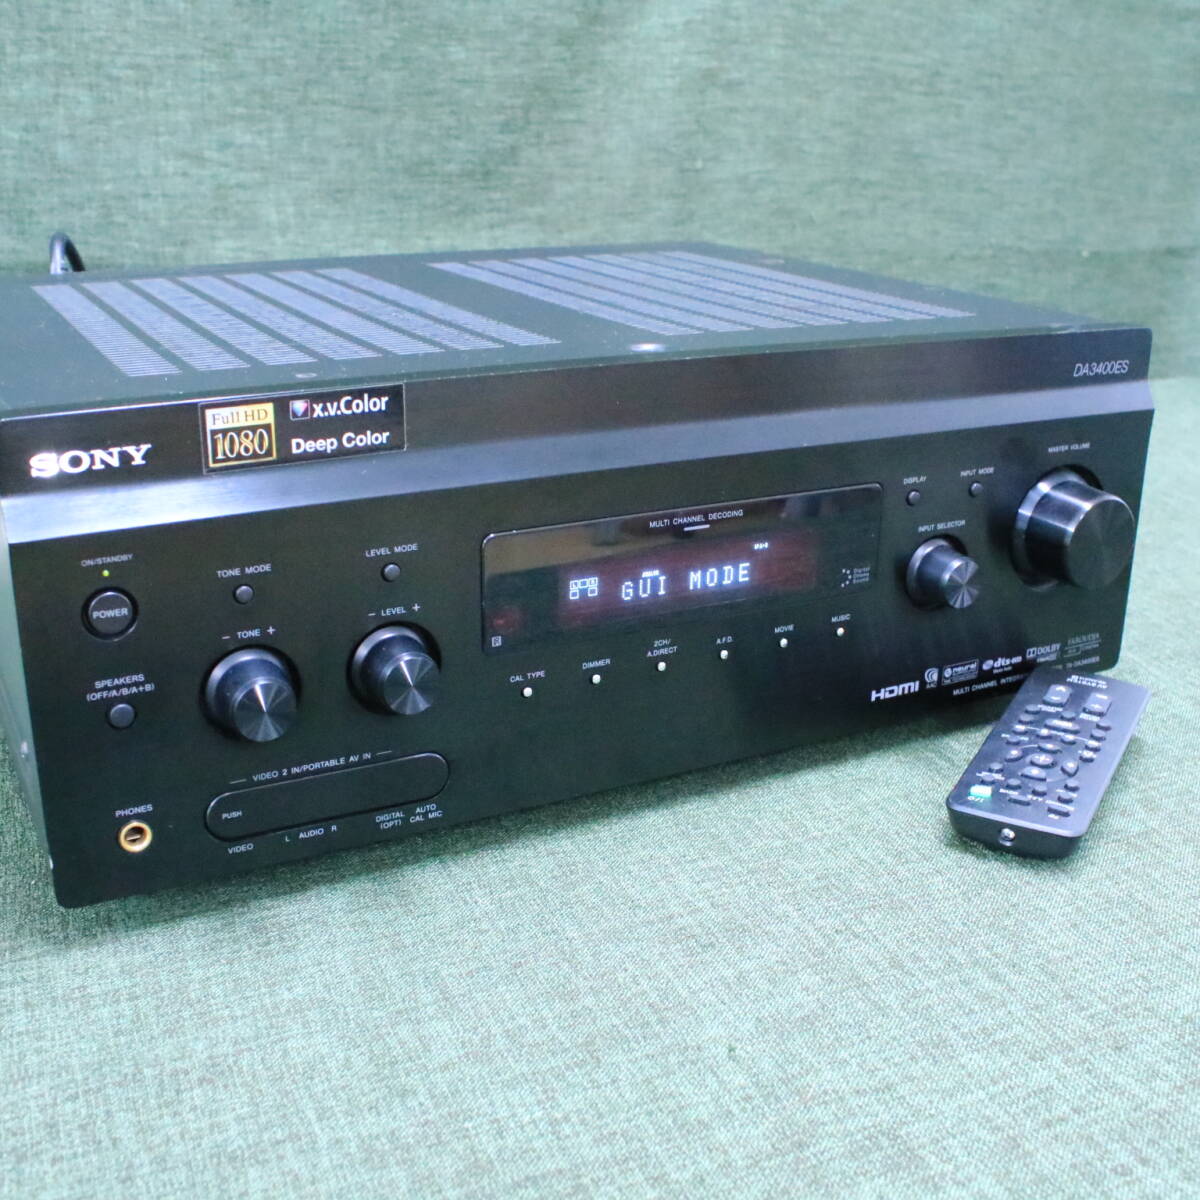 a//A7490 SONY Sony компонент аудио TA-DA3400ES мульти- канал Inte комплектация усилитель 